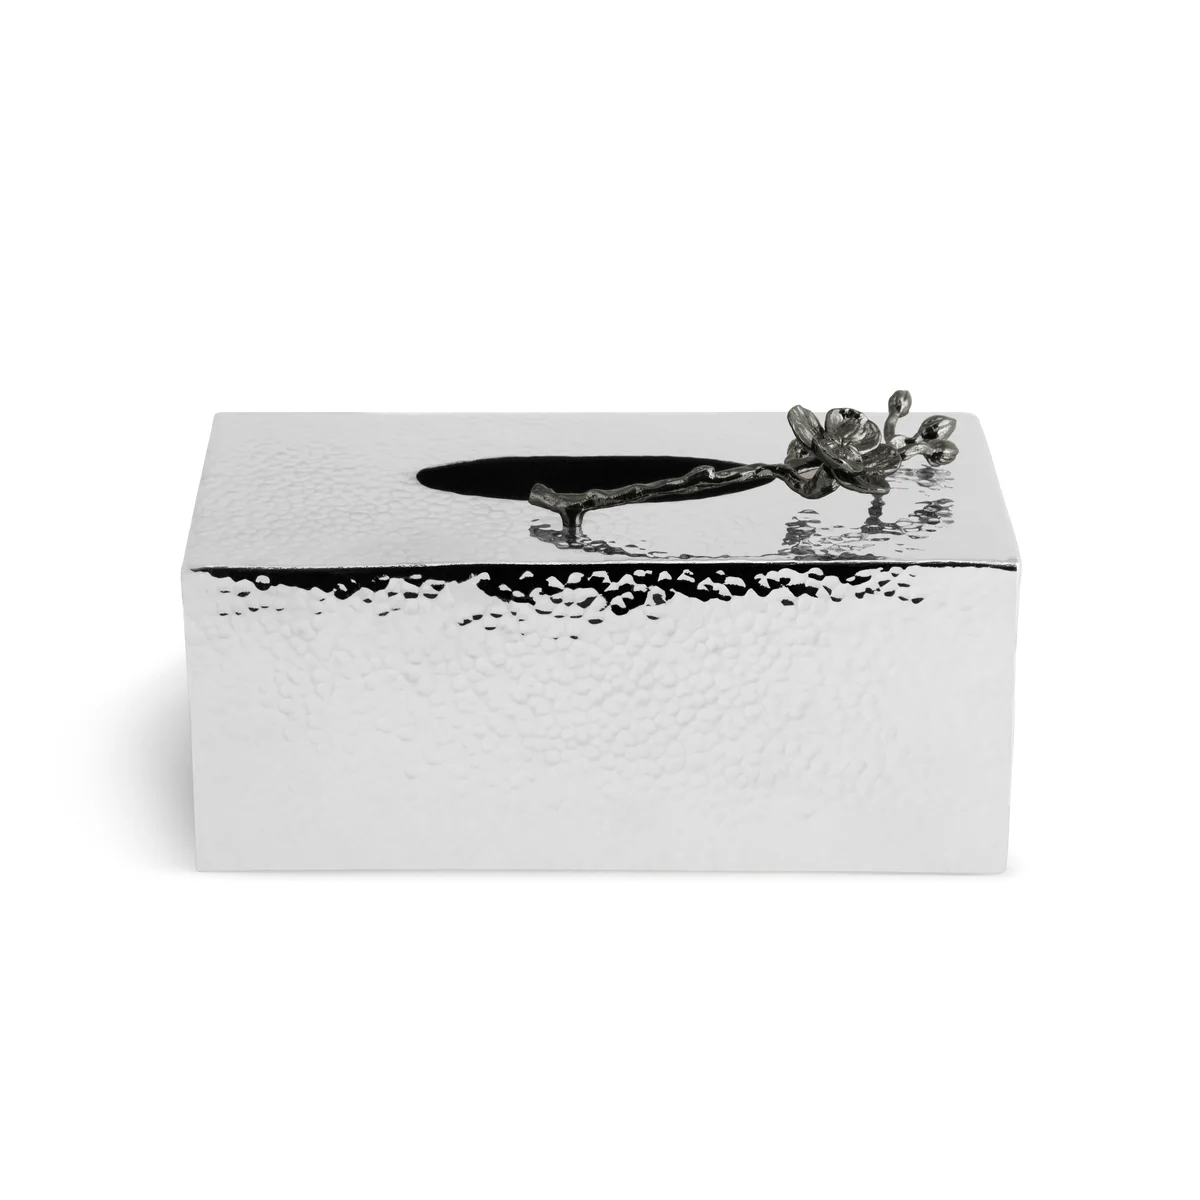 Michael Aram Black Orchid Rectangular Tissue Box